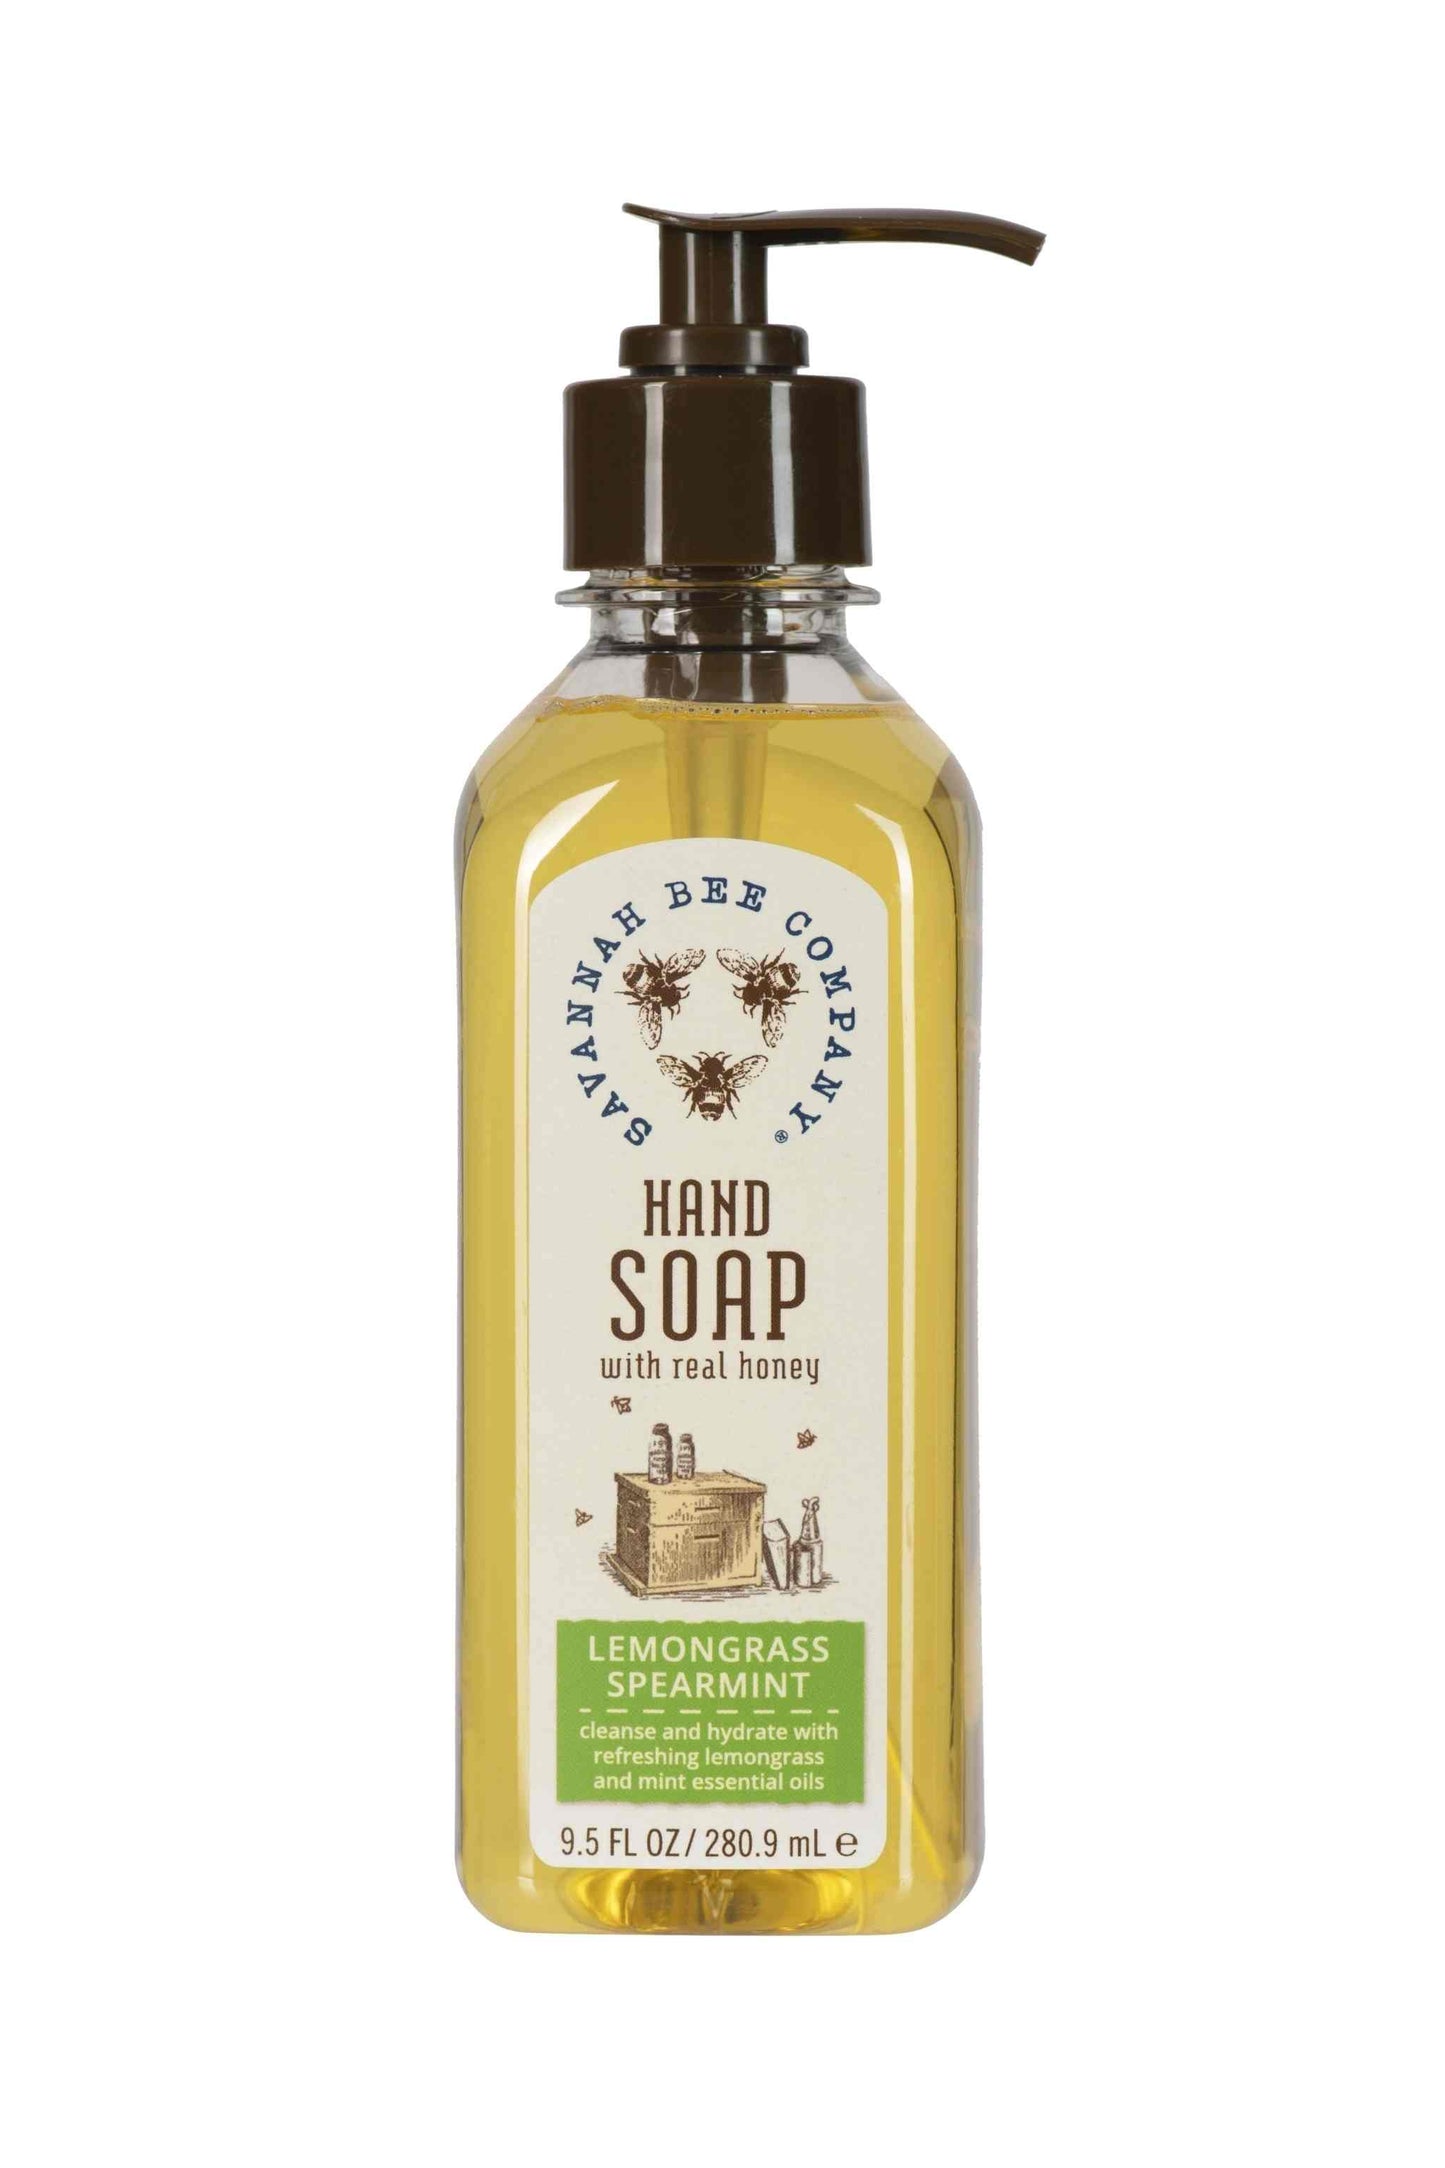 Lemongrass Spearmint Hand Soap 9.5 fl oz. 